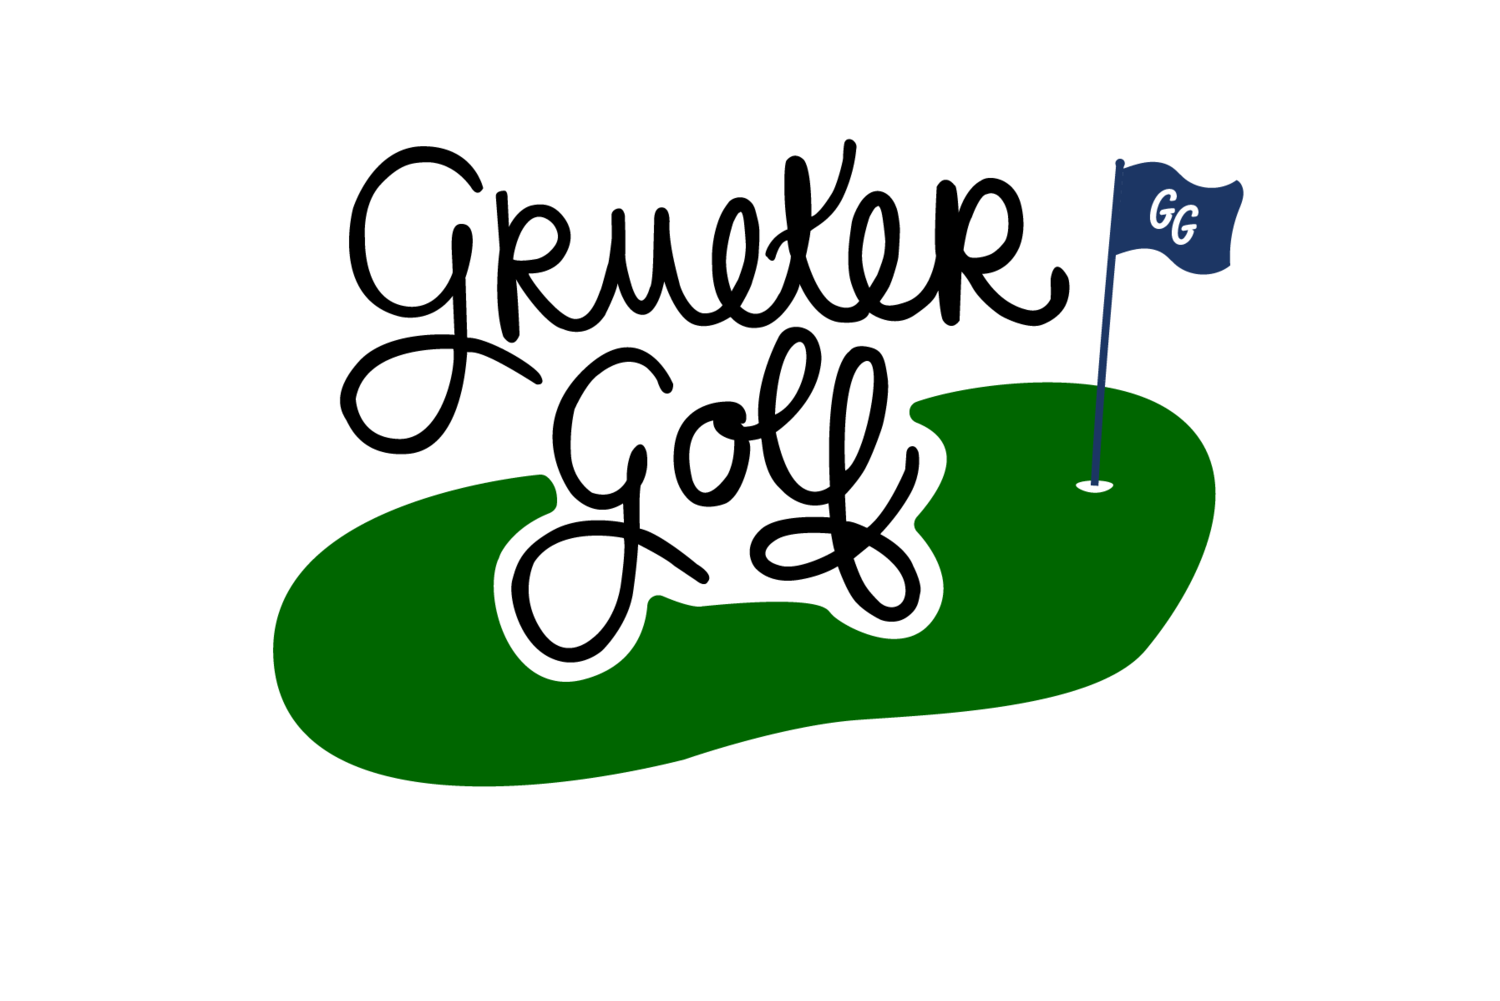 Grueter Golf